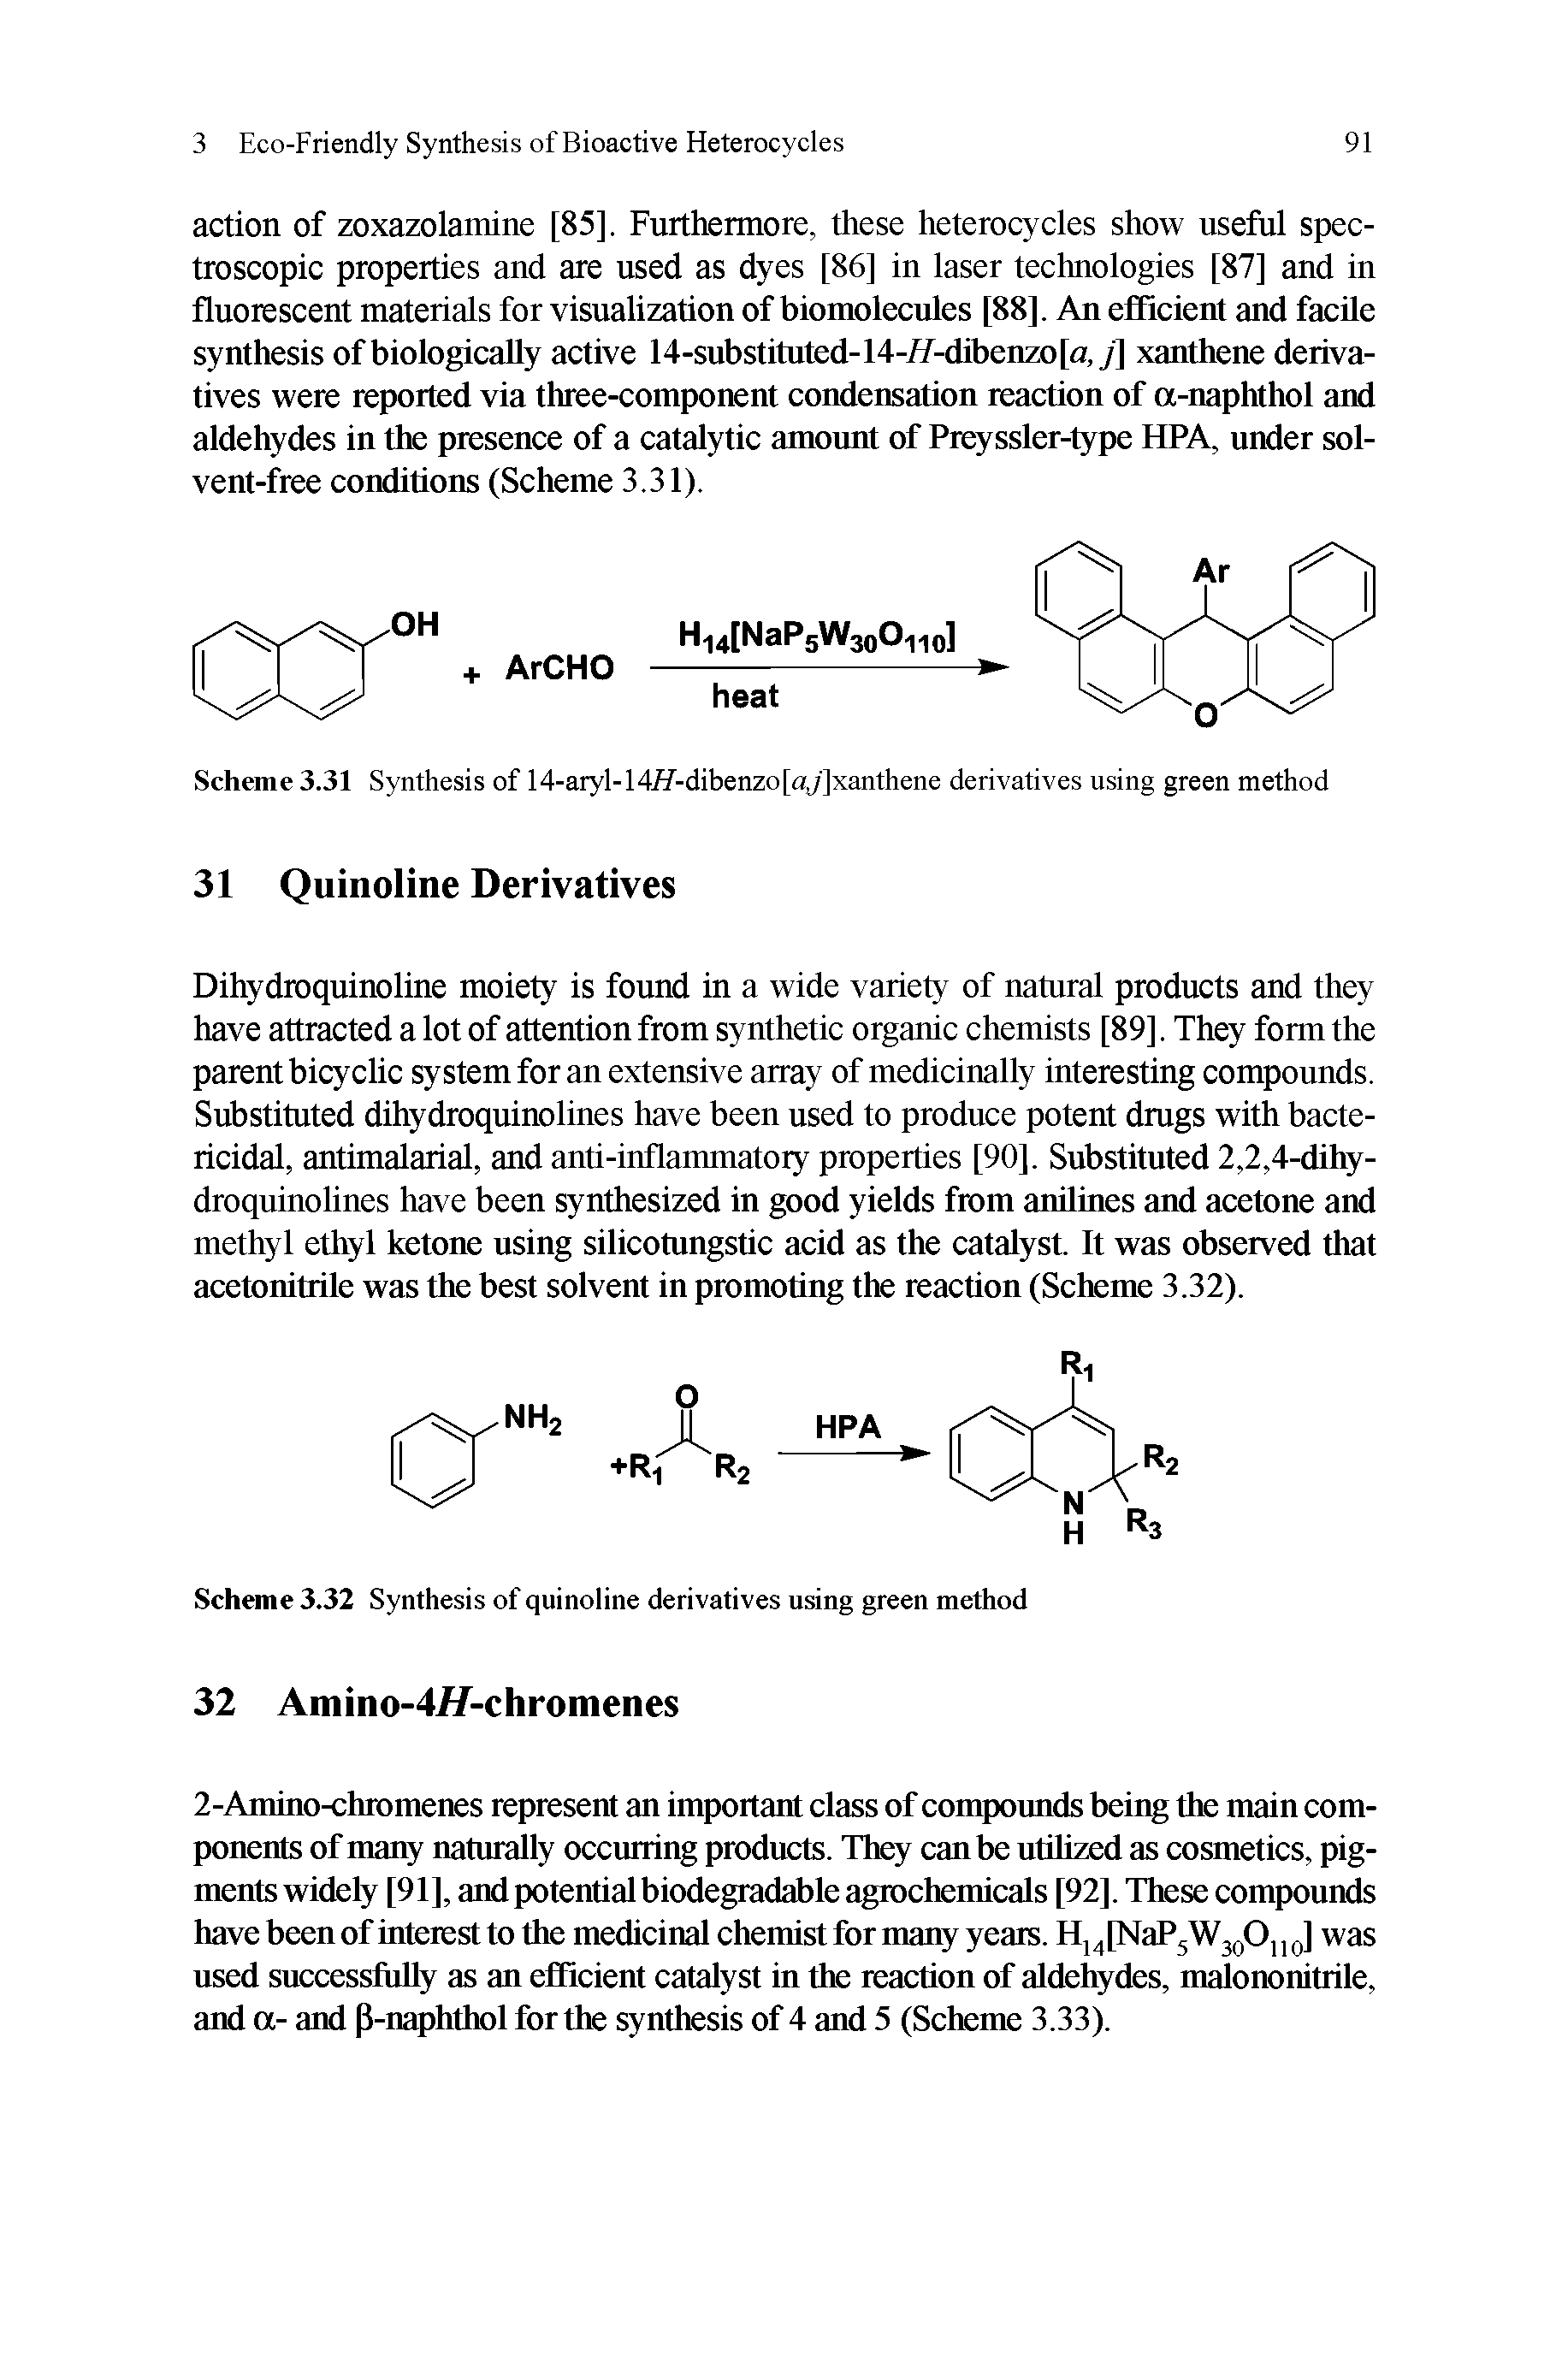 Scheme 3.32 Synthesis of quinoline derivatives using green method...